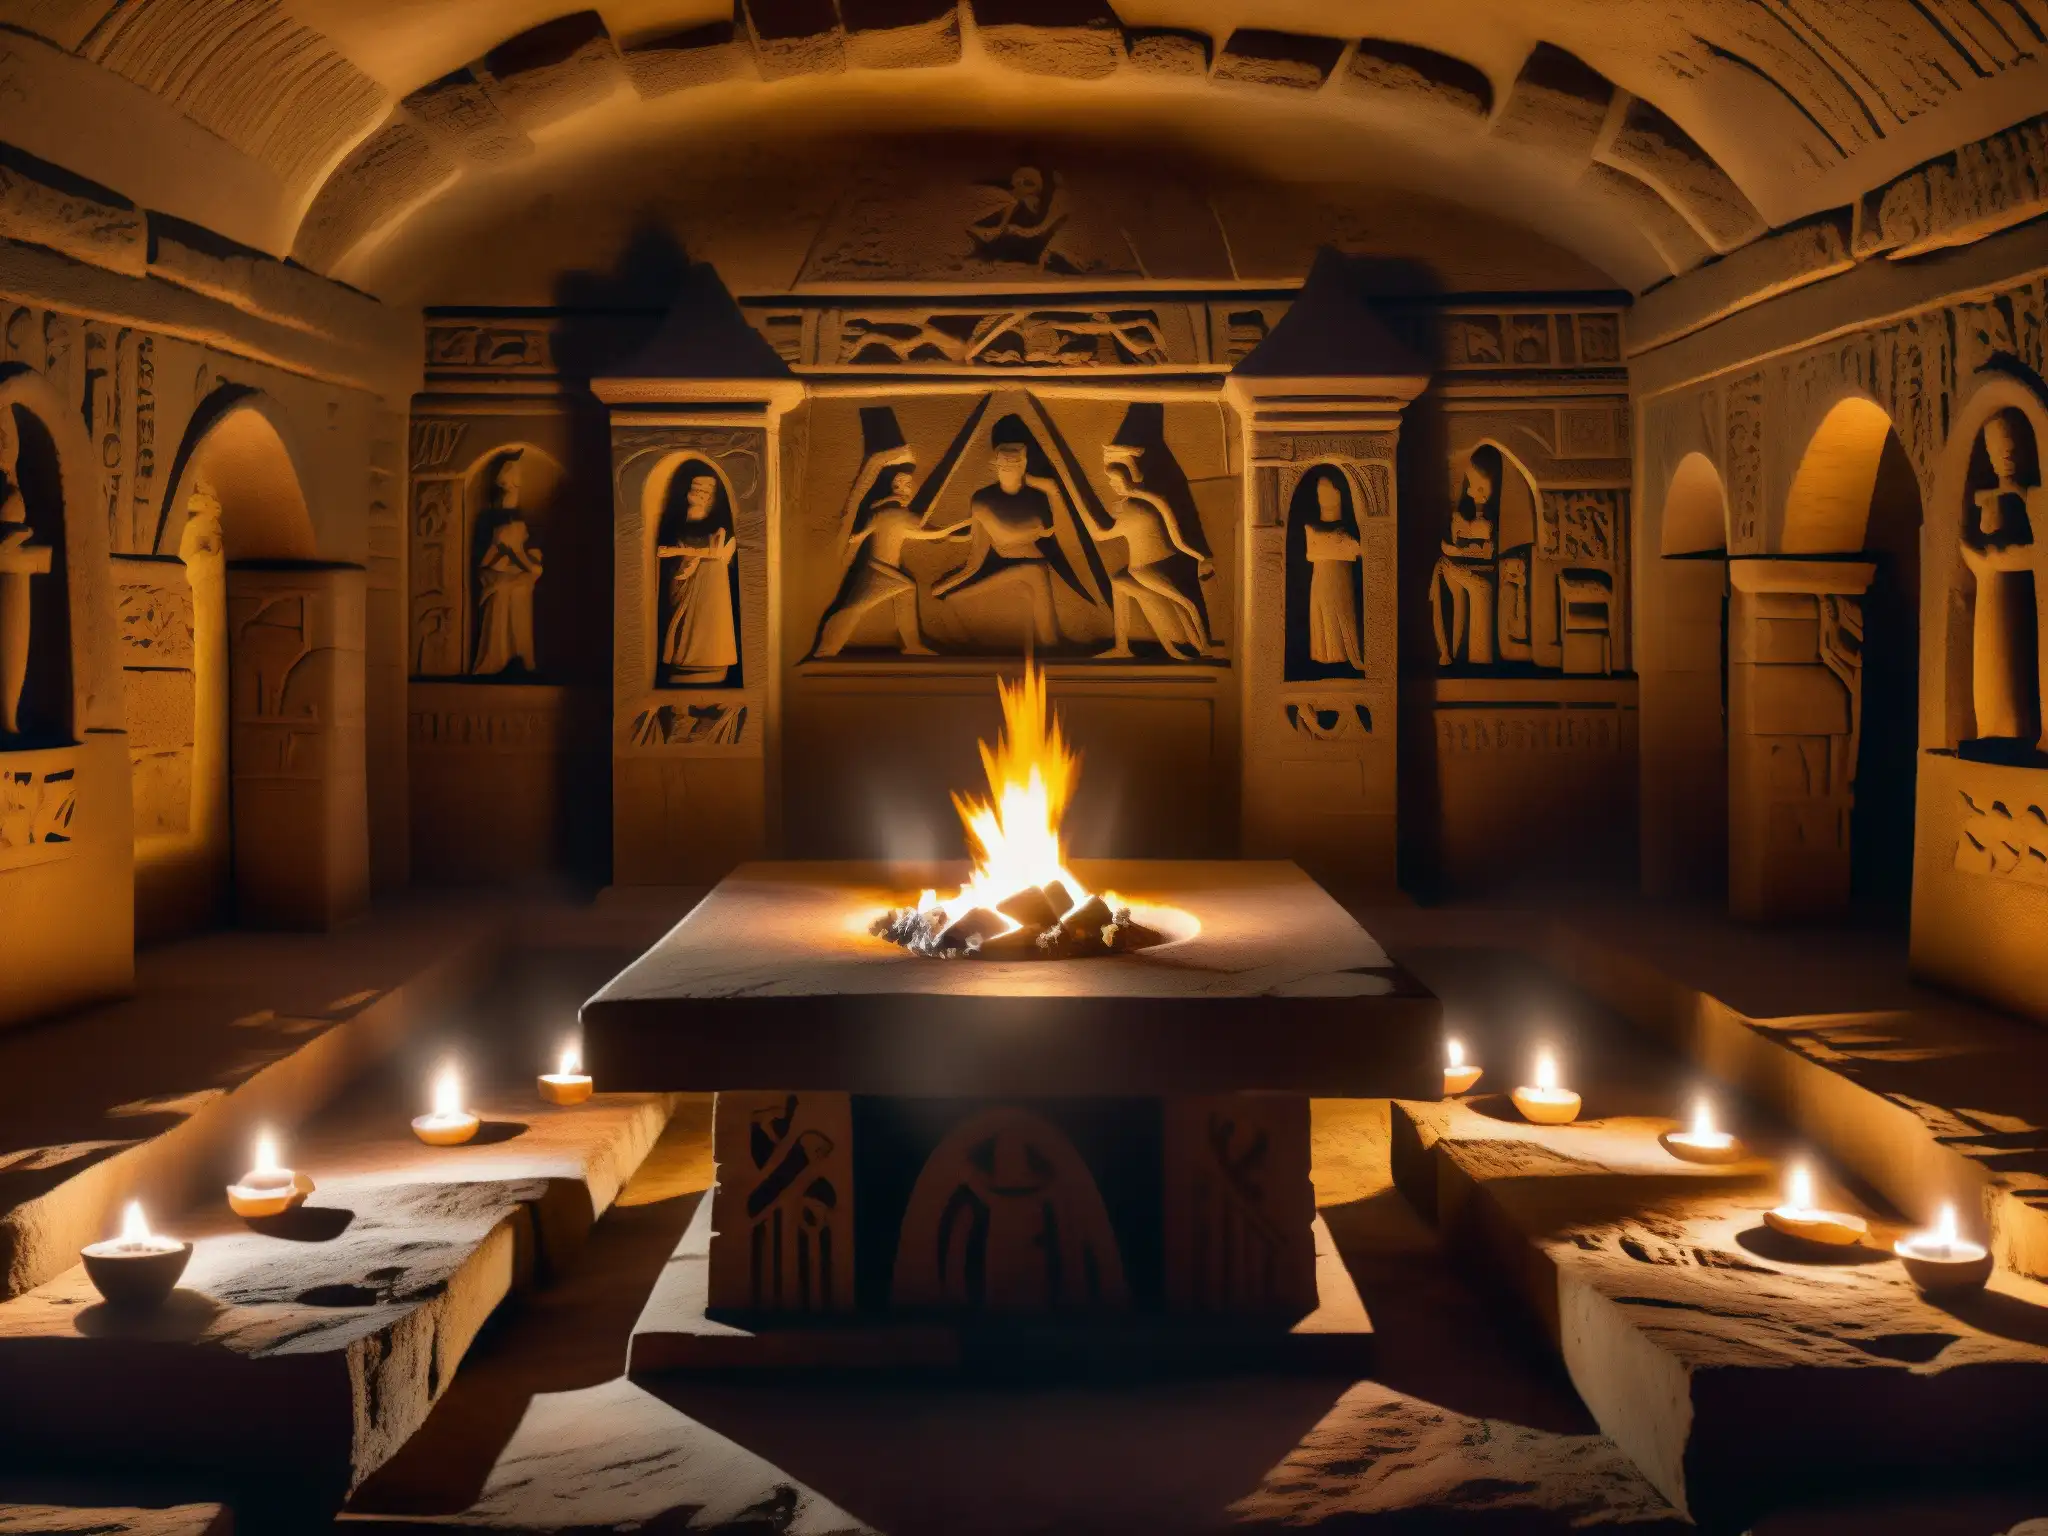 En la cripta de brujas, una atmósfera misteriosa y cautivadora llena de origen y misterio de la cripta